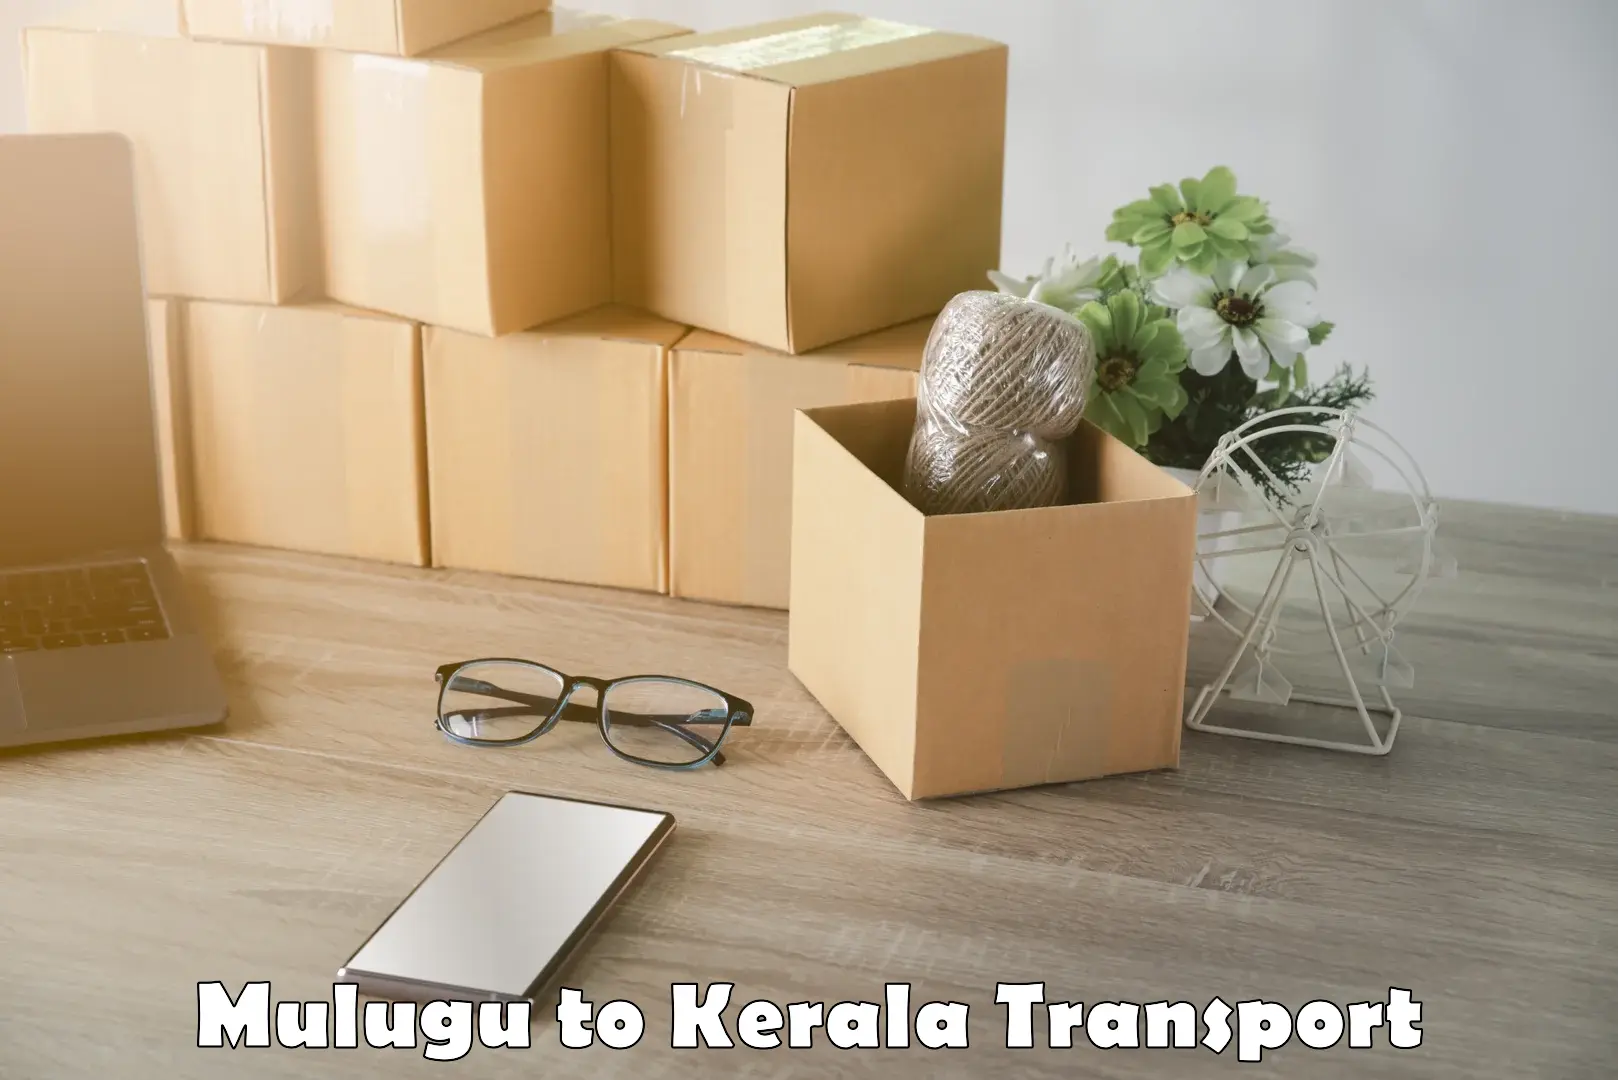 Pick up transport service Mulugu to Kerala